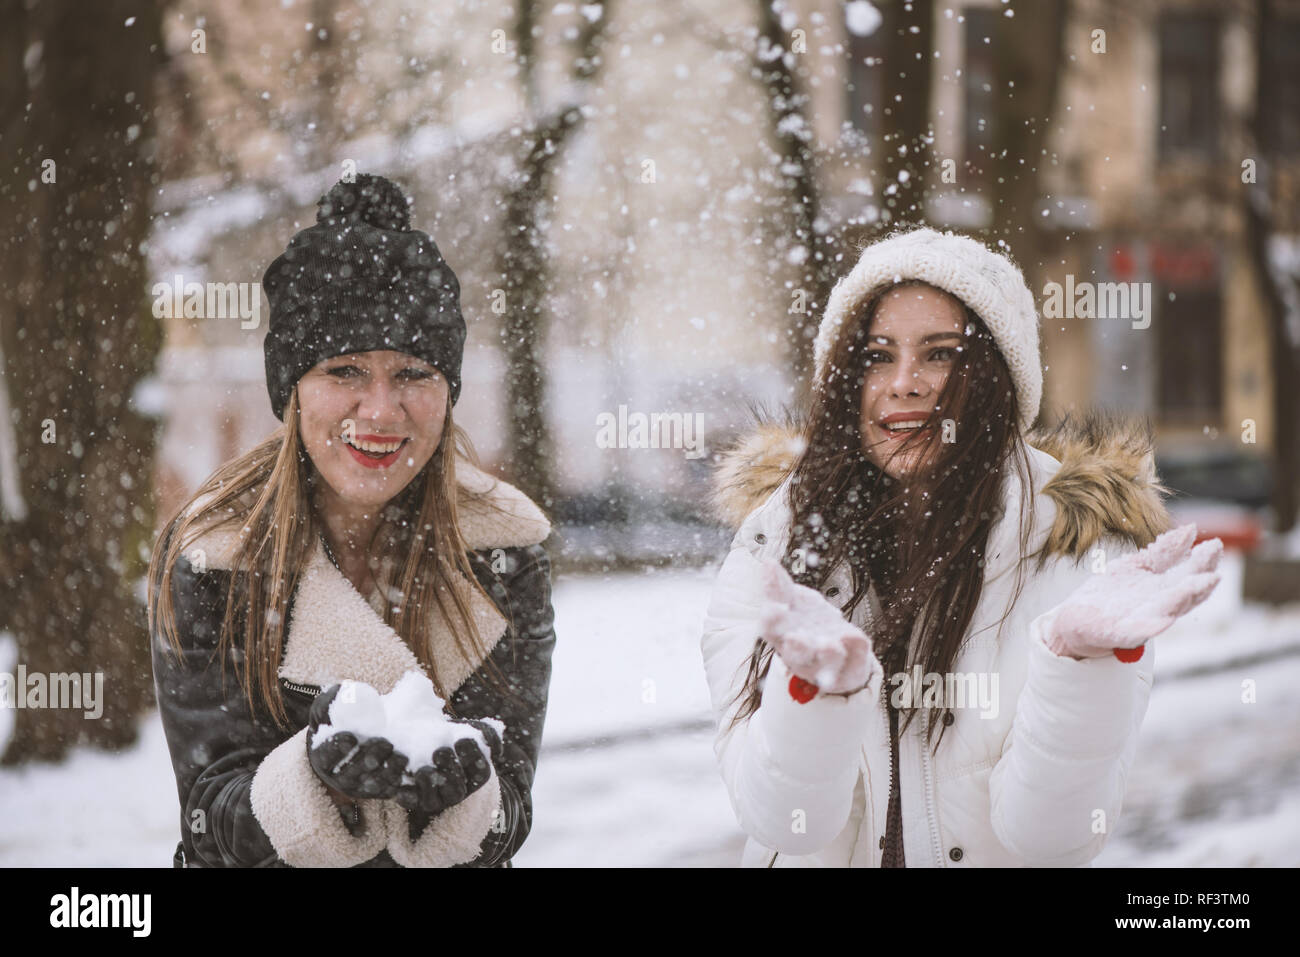 Niña jugando con nieve niña en guantes mantenga bola de nieve invierno  mujer sonriente en ropa de abrigo con